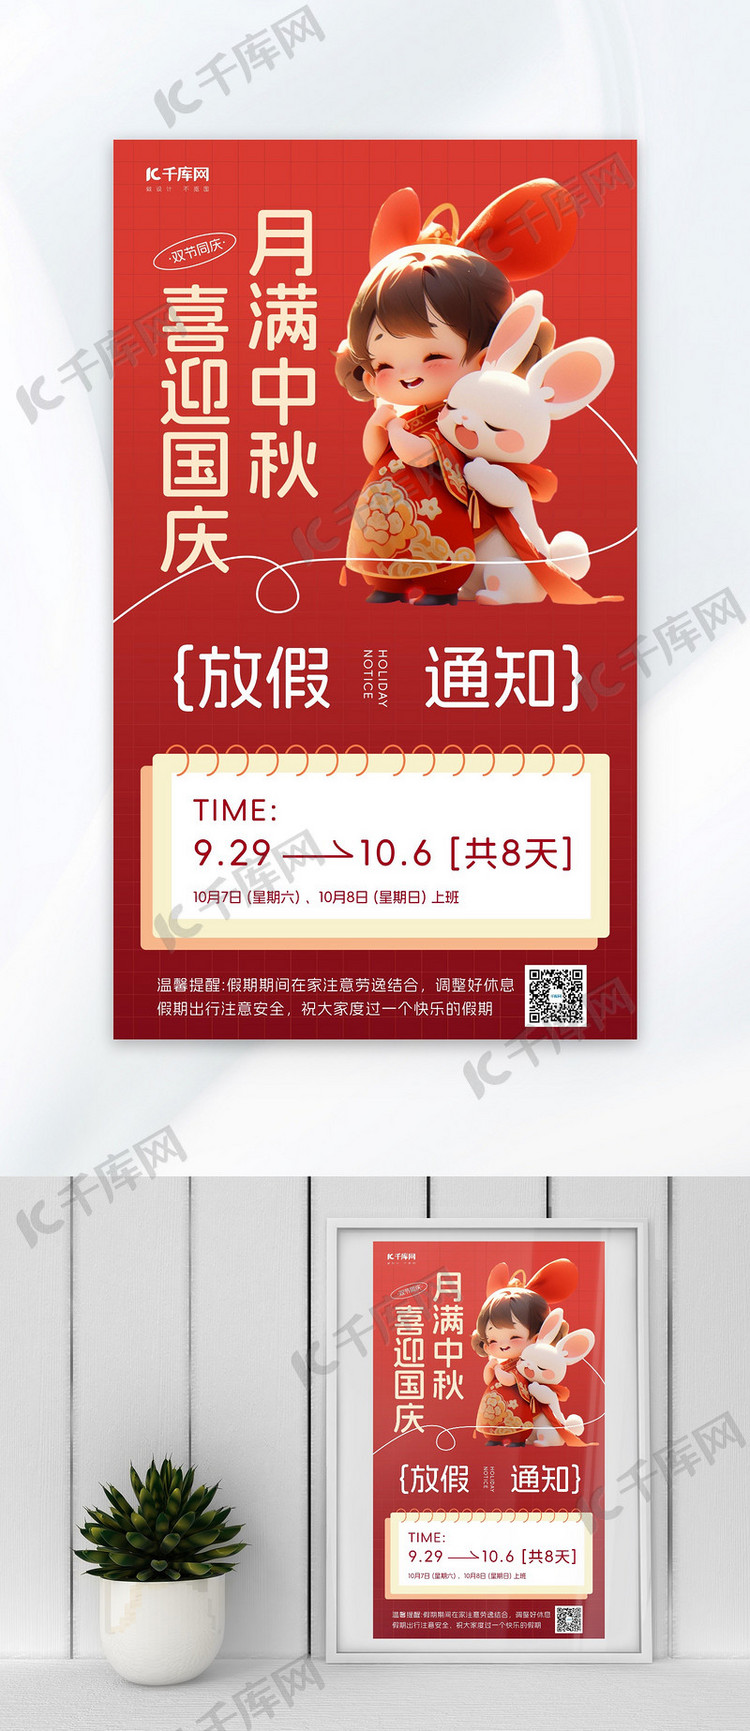 中秋国庆放假通知红色AIGC广告海报